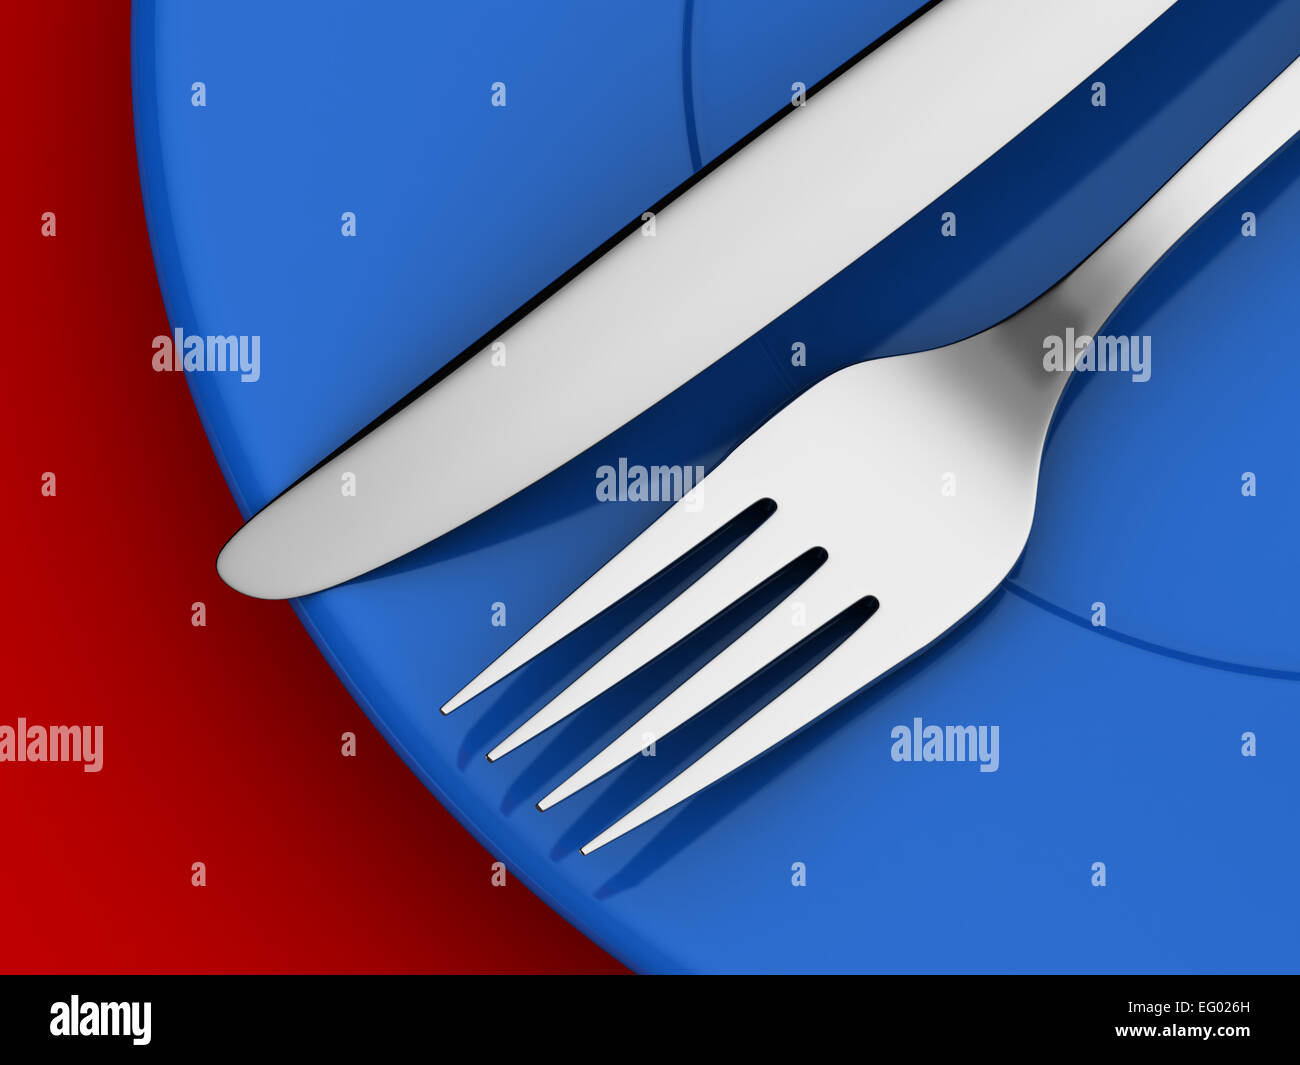 Le rendu 3D de fourchette et couteau en plaque bleue Banque D'Images